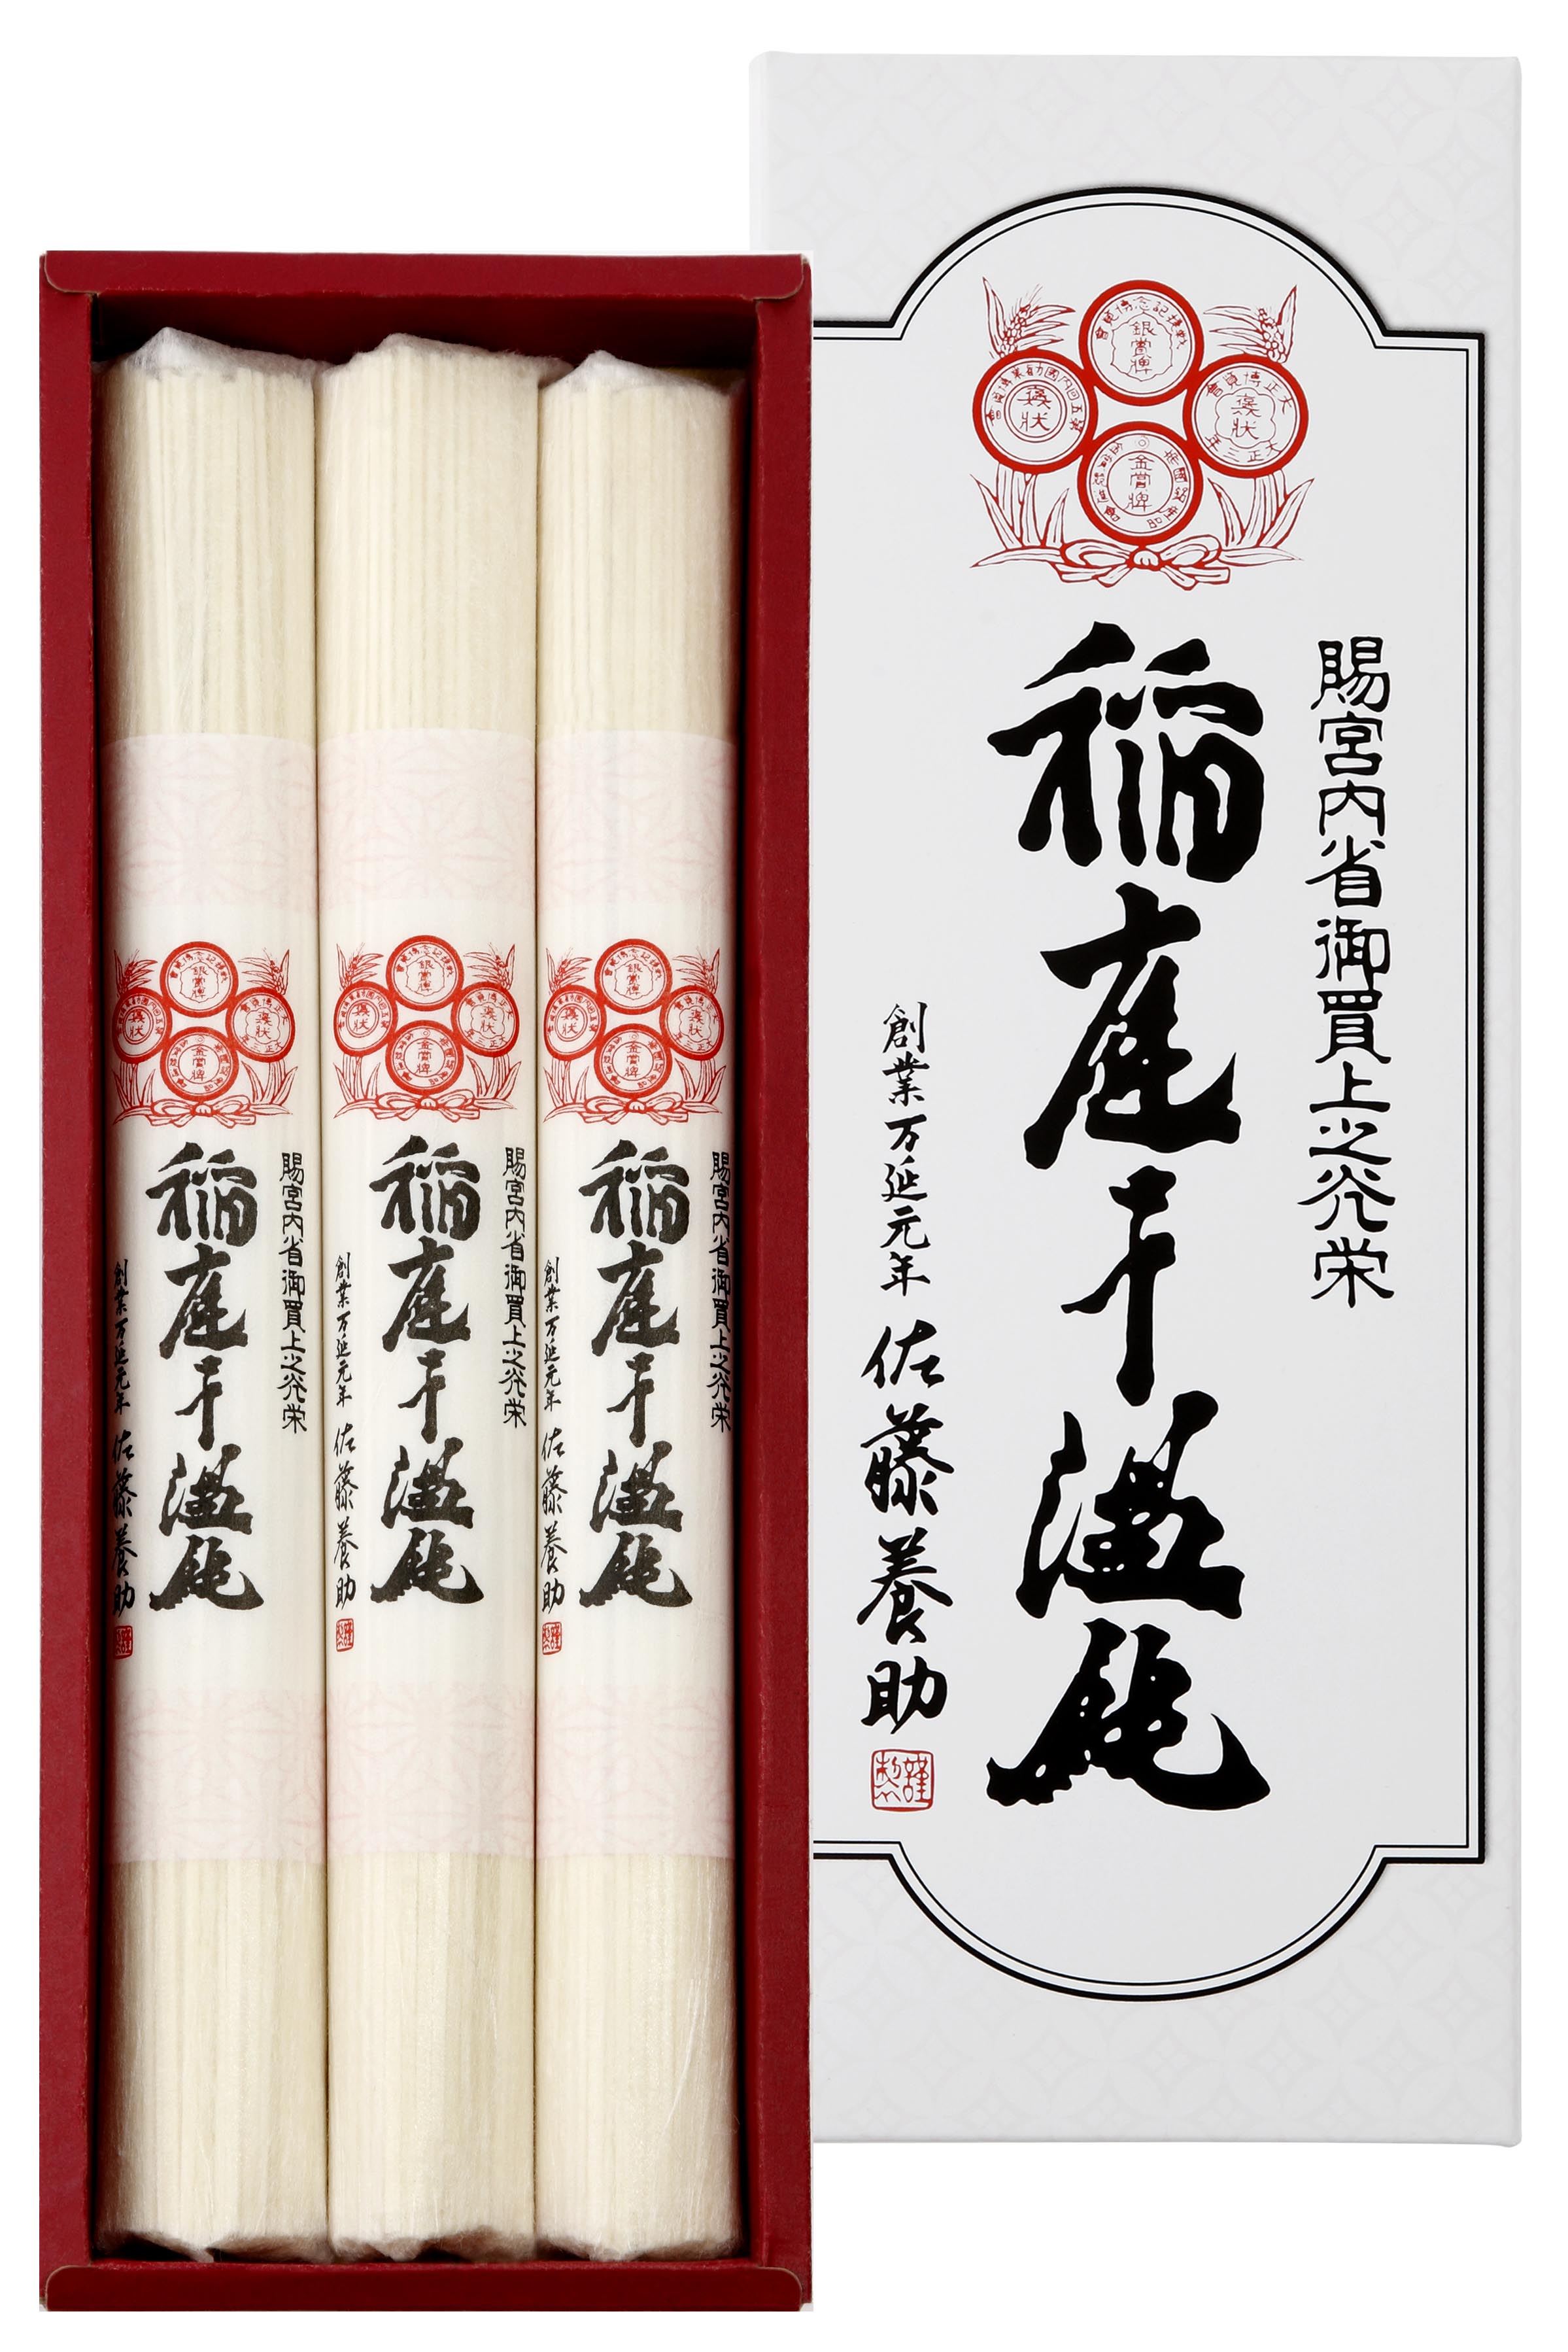 來嘉年華不可錯過的「稻庭烏龍麵」，是明治時期日本皇室青睞的御用食材。